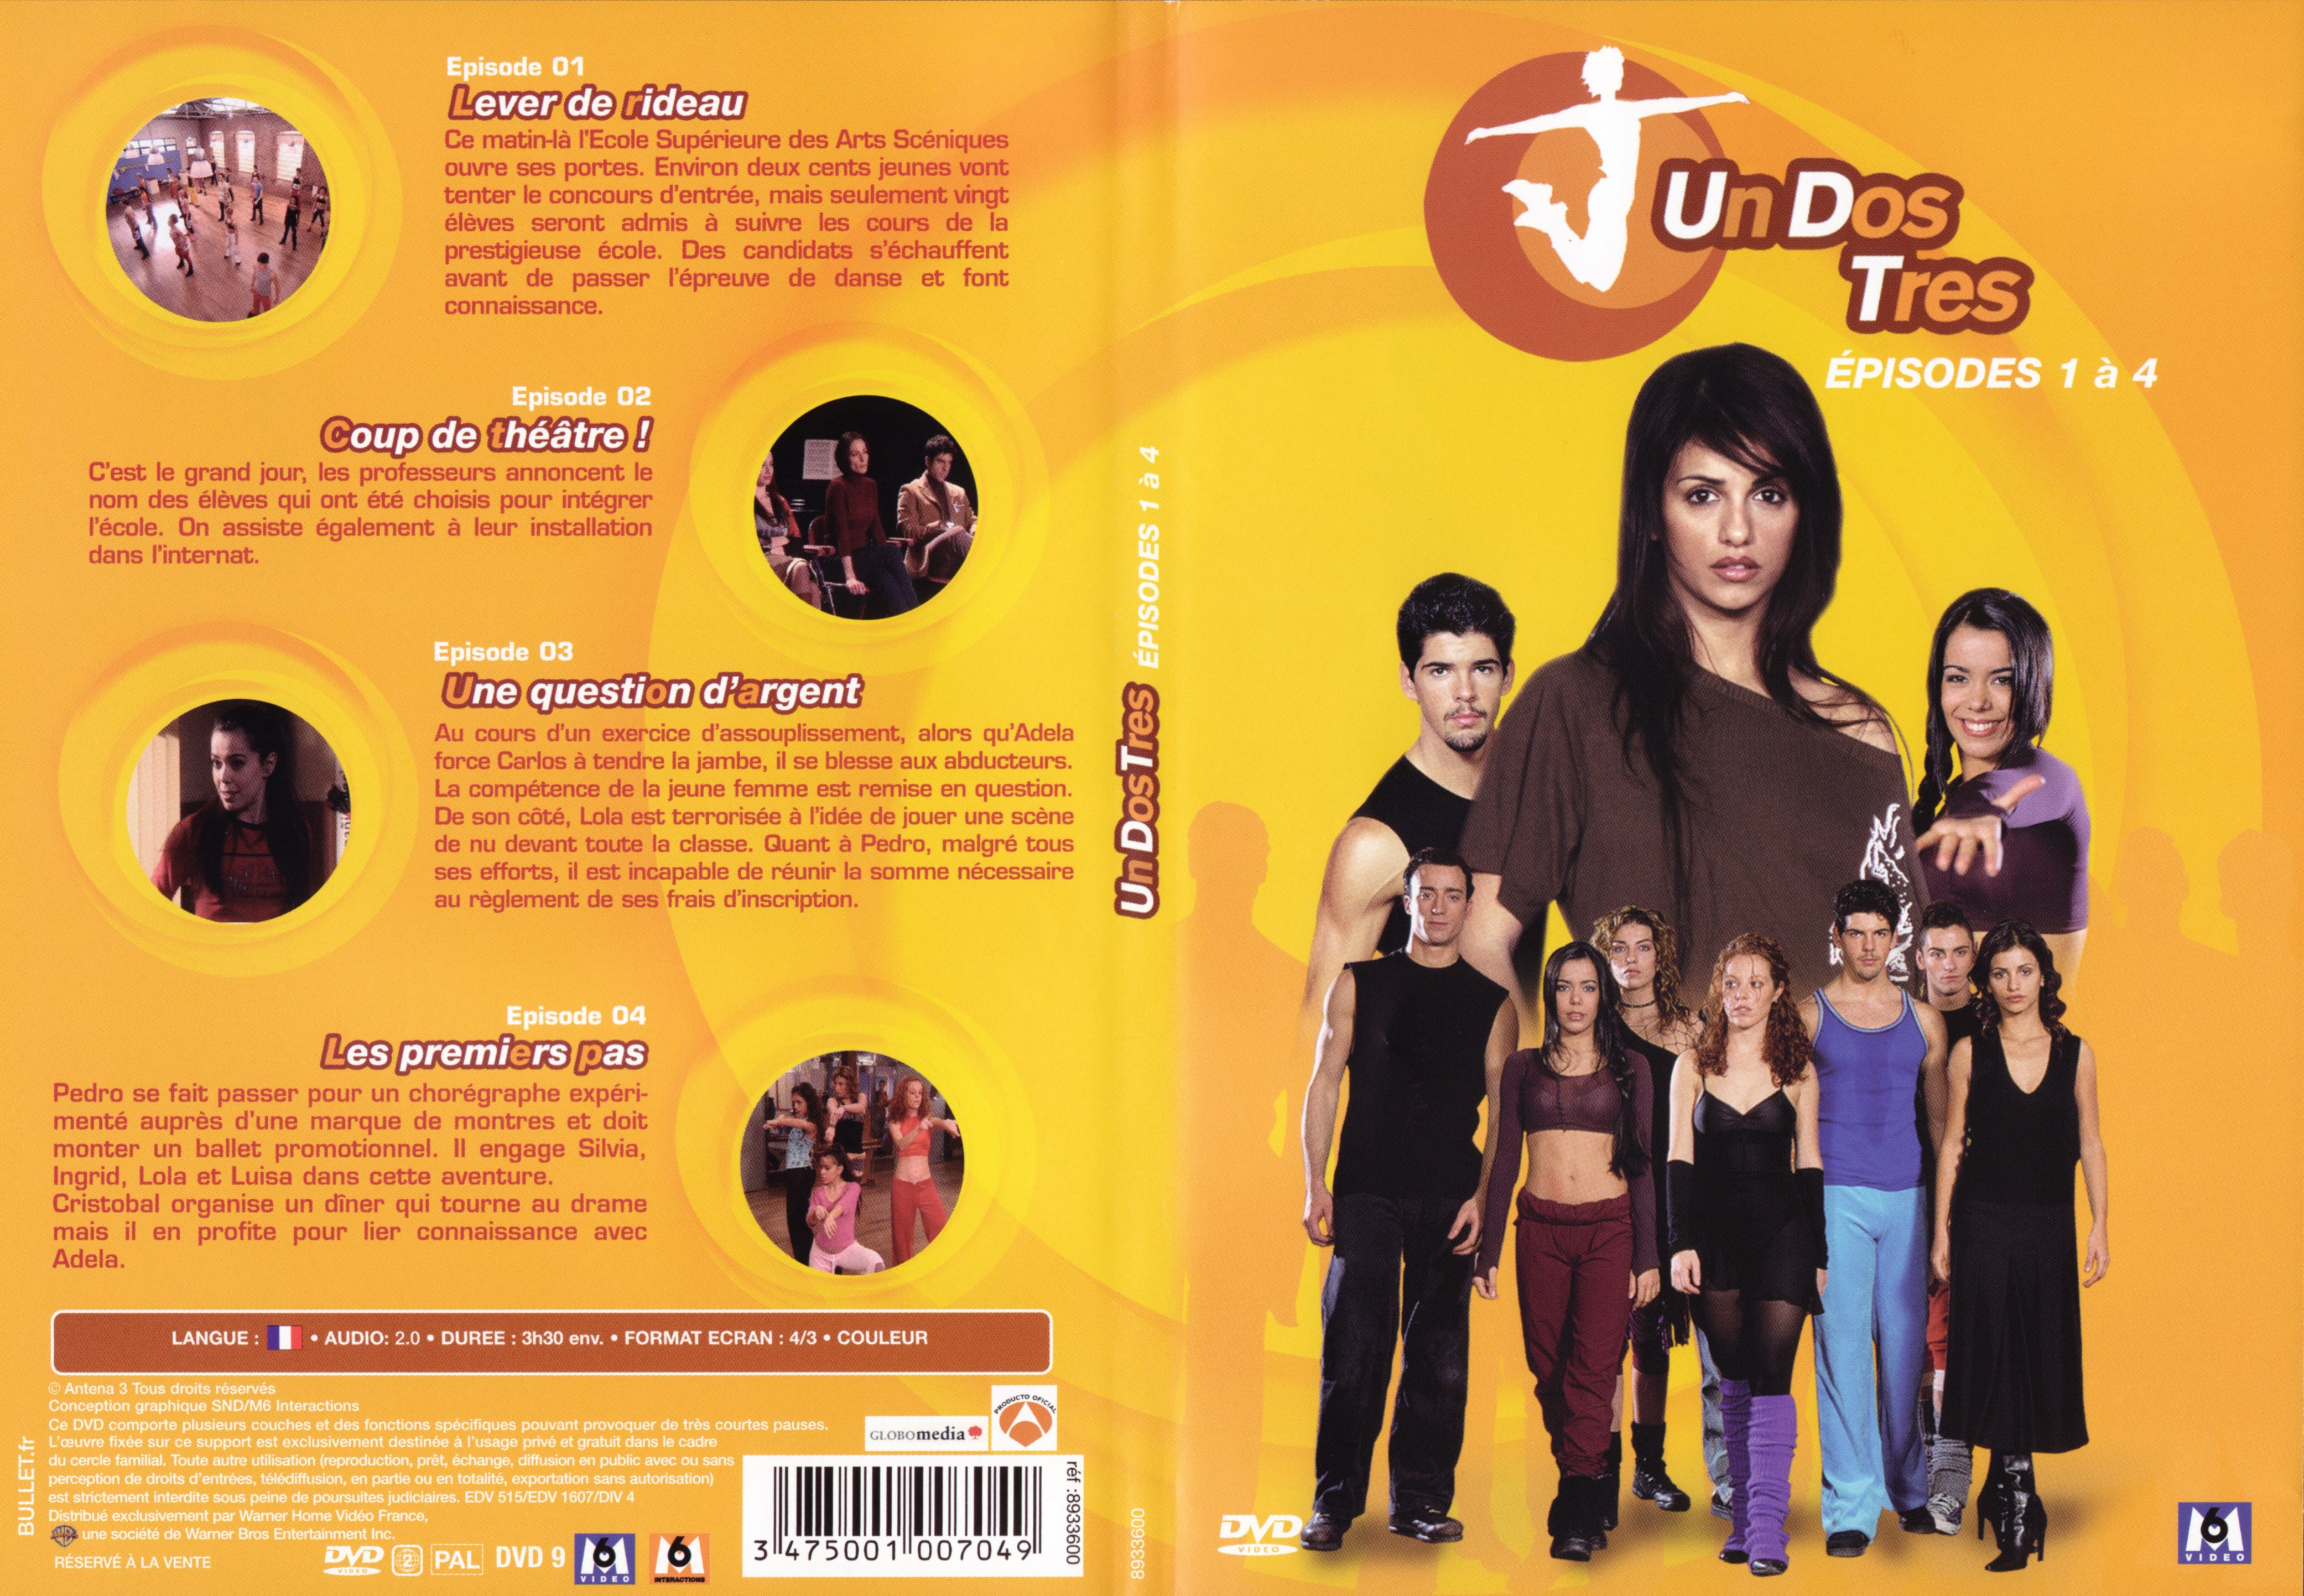 Jaquette DVD Un dos tres Saison 1 DVD 1